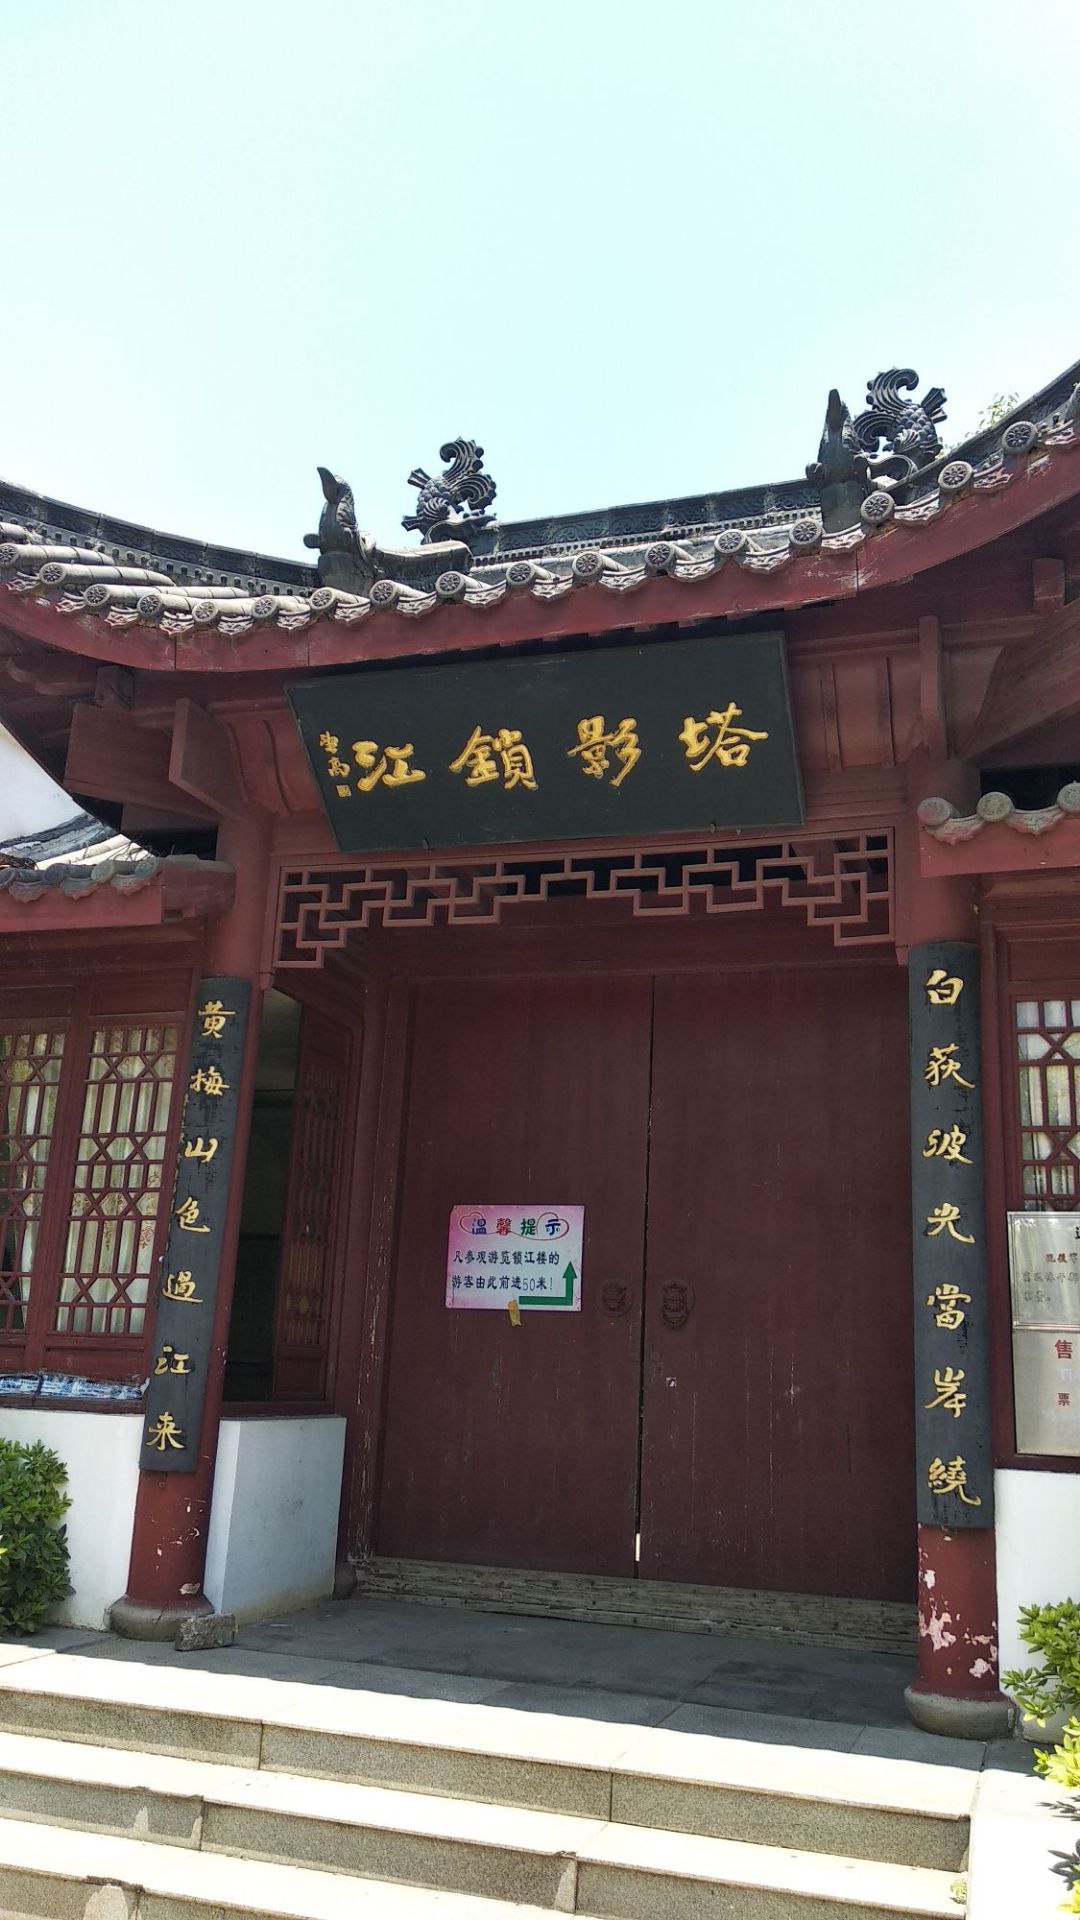 锁江塔楼，九江八景之一，位于九江长江岸边，始建于明万历十四年，一塔一楼都充满了历史。